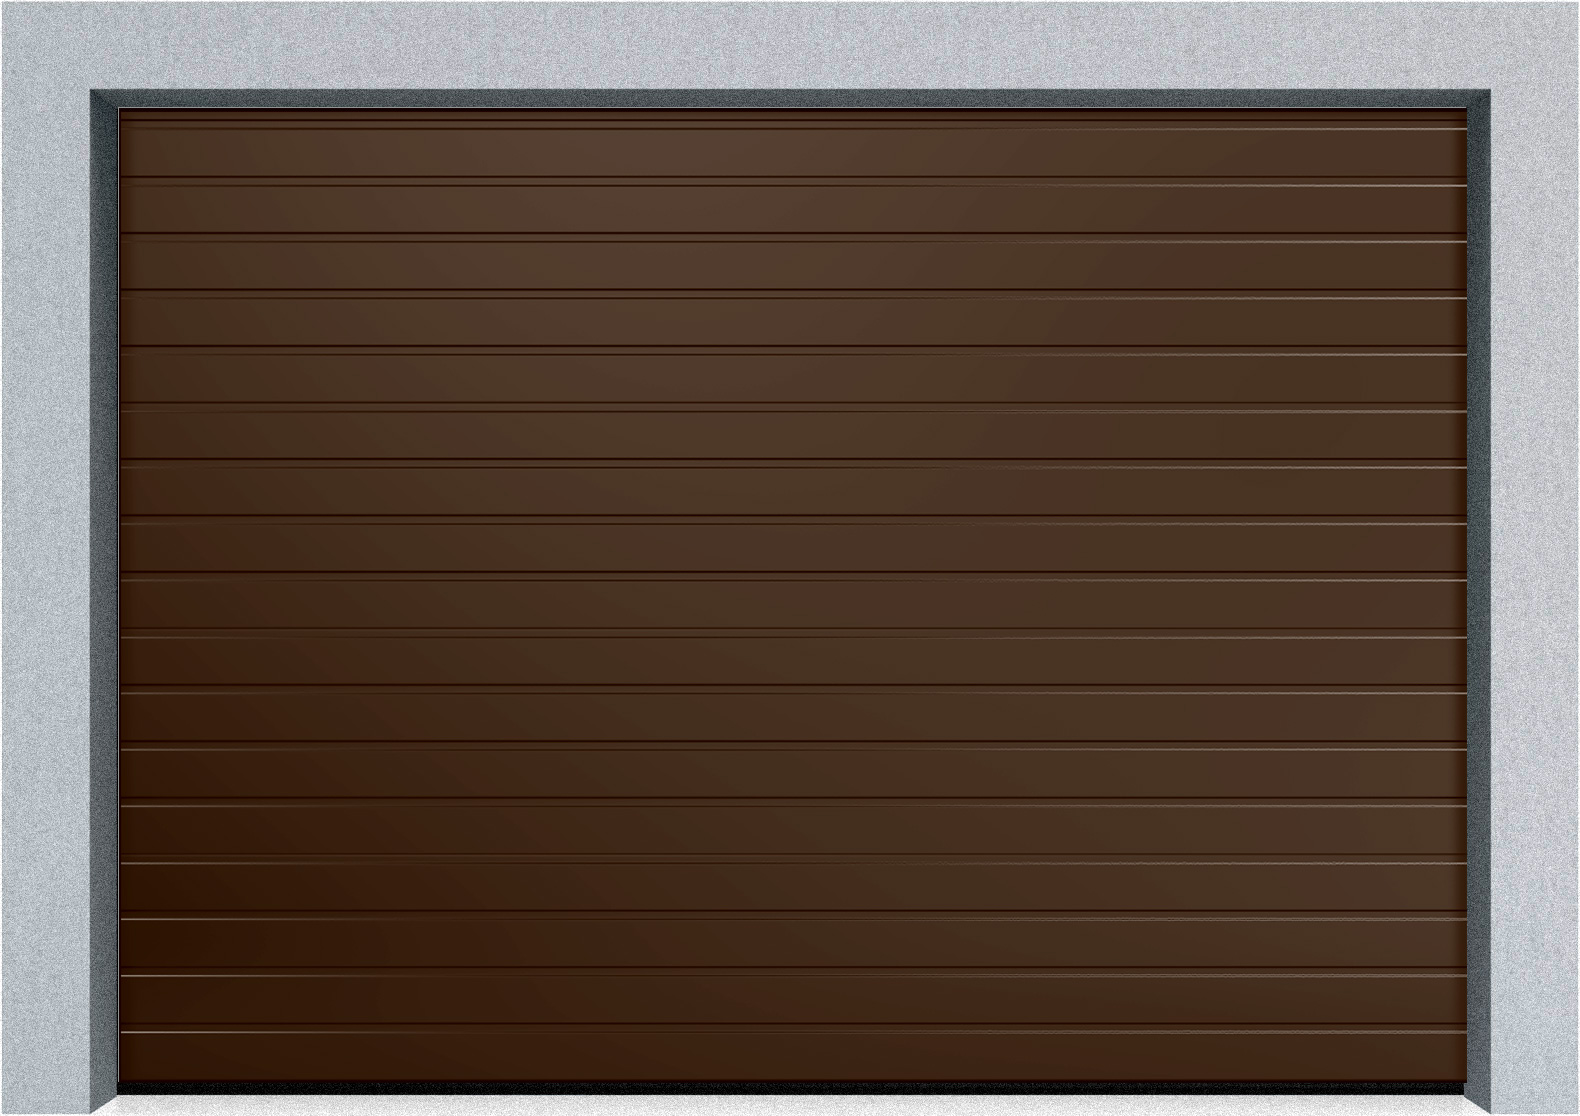  Автоматические секционные промышленные ворота DoorHan ISD ThermalPro 2300x3700 S-гофр, M-гофр, Микроволна стандартные цвета, фото 2 